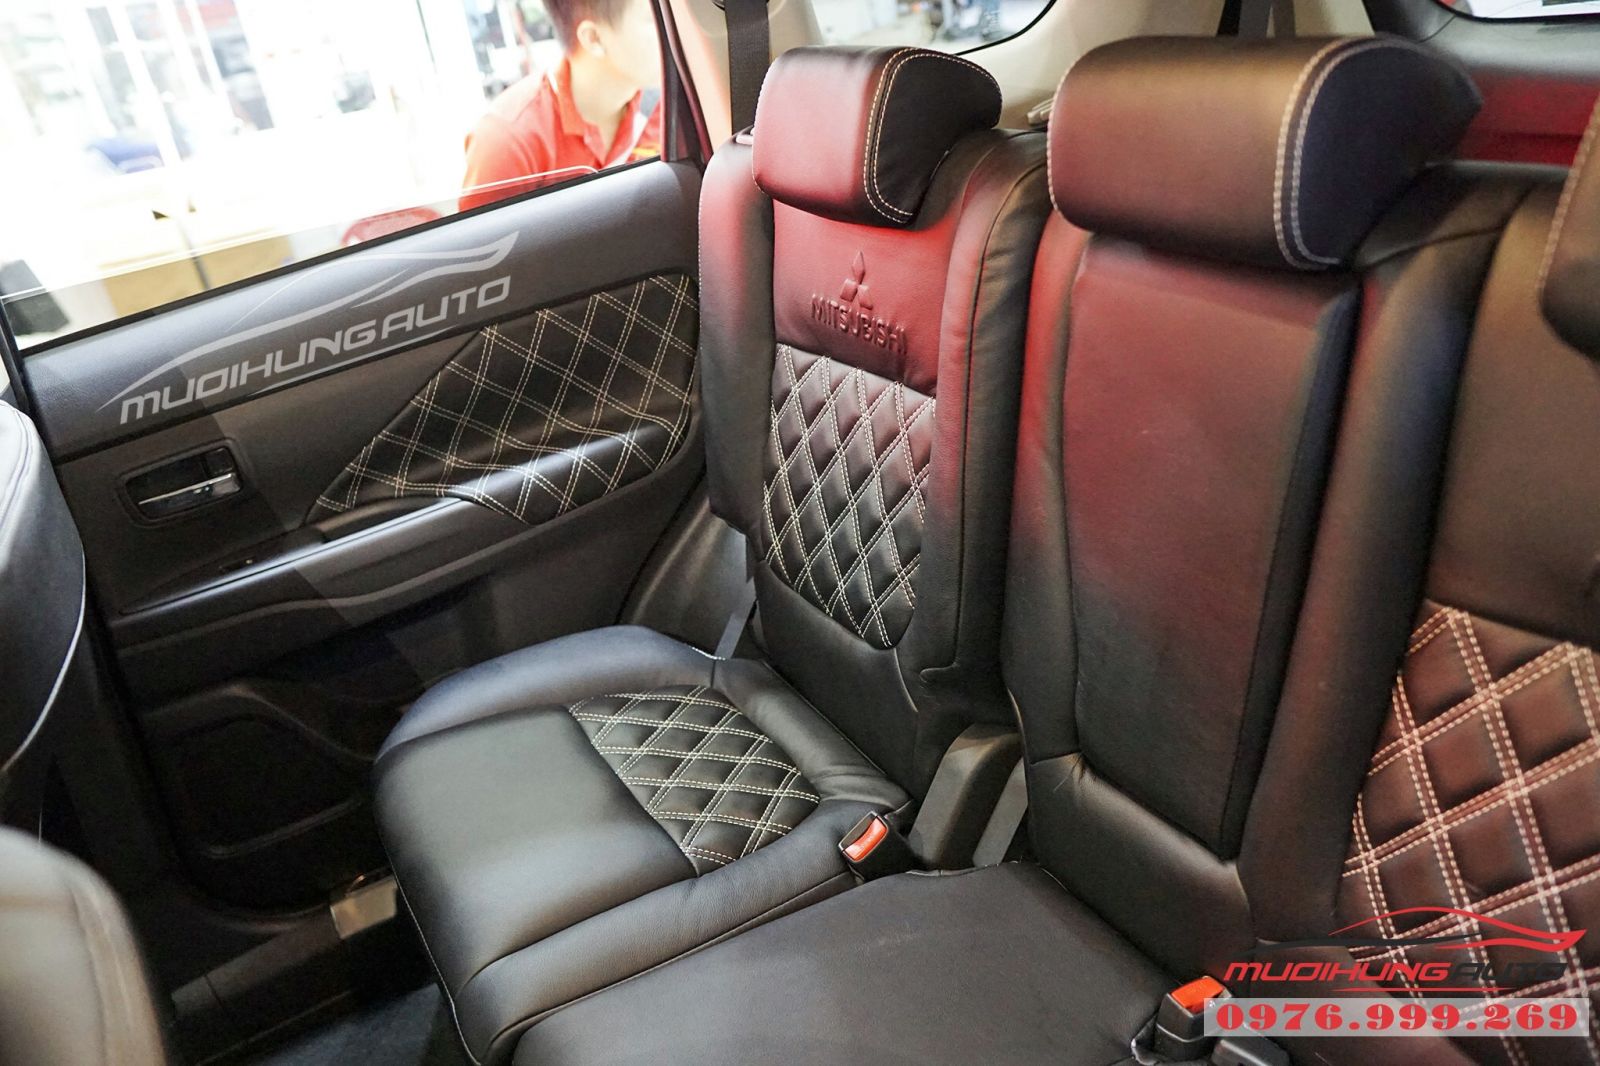 Mitsubishi Outlander bọc ghế cao cấp giá rẻ tại TPHCM 06